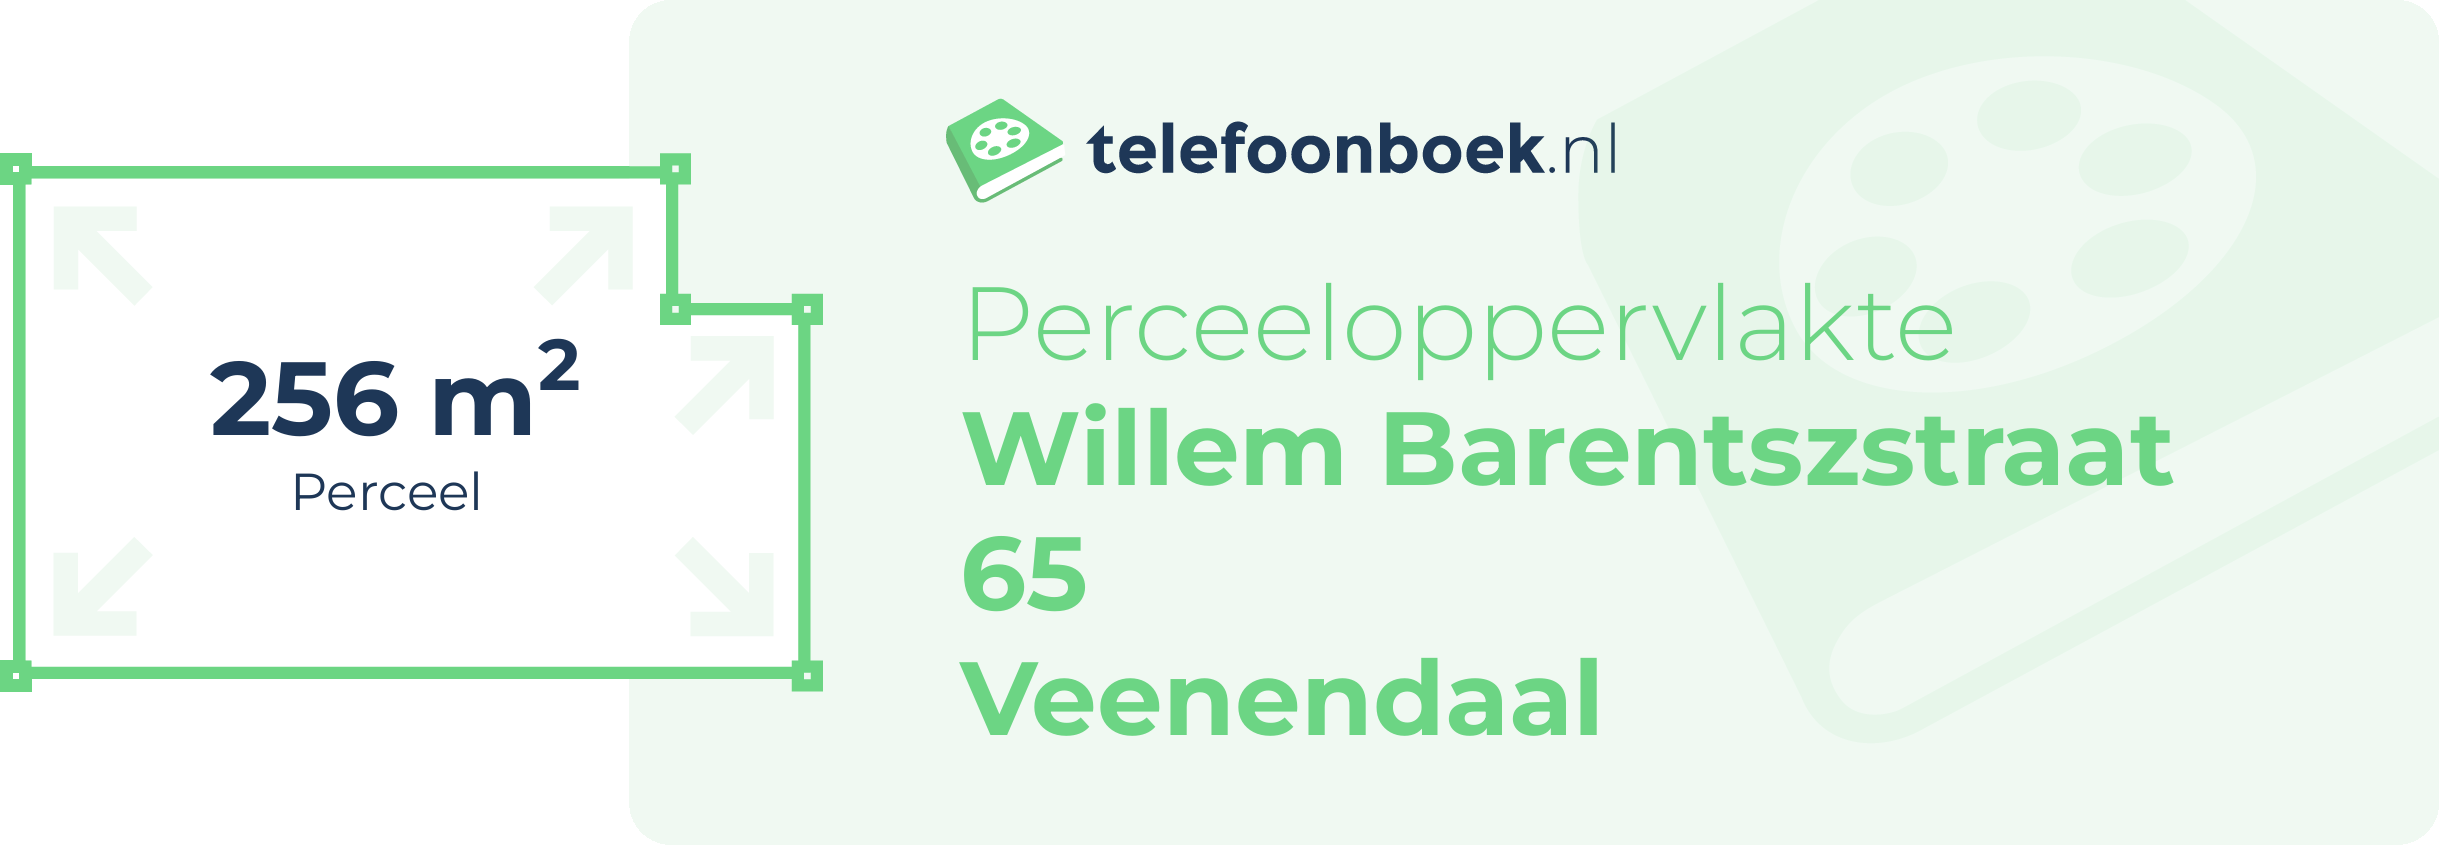 Perceeloppervlakte Willem Barentszstraat 65 Veenendaal